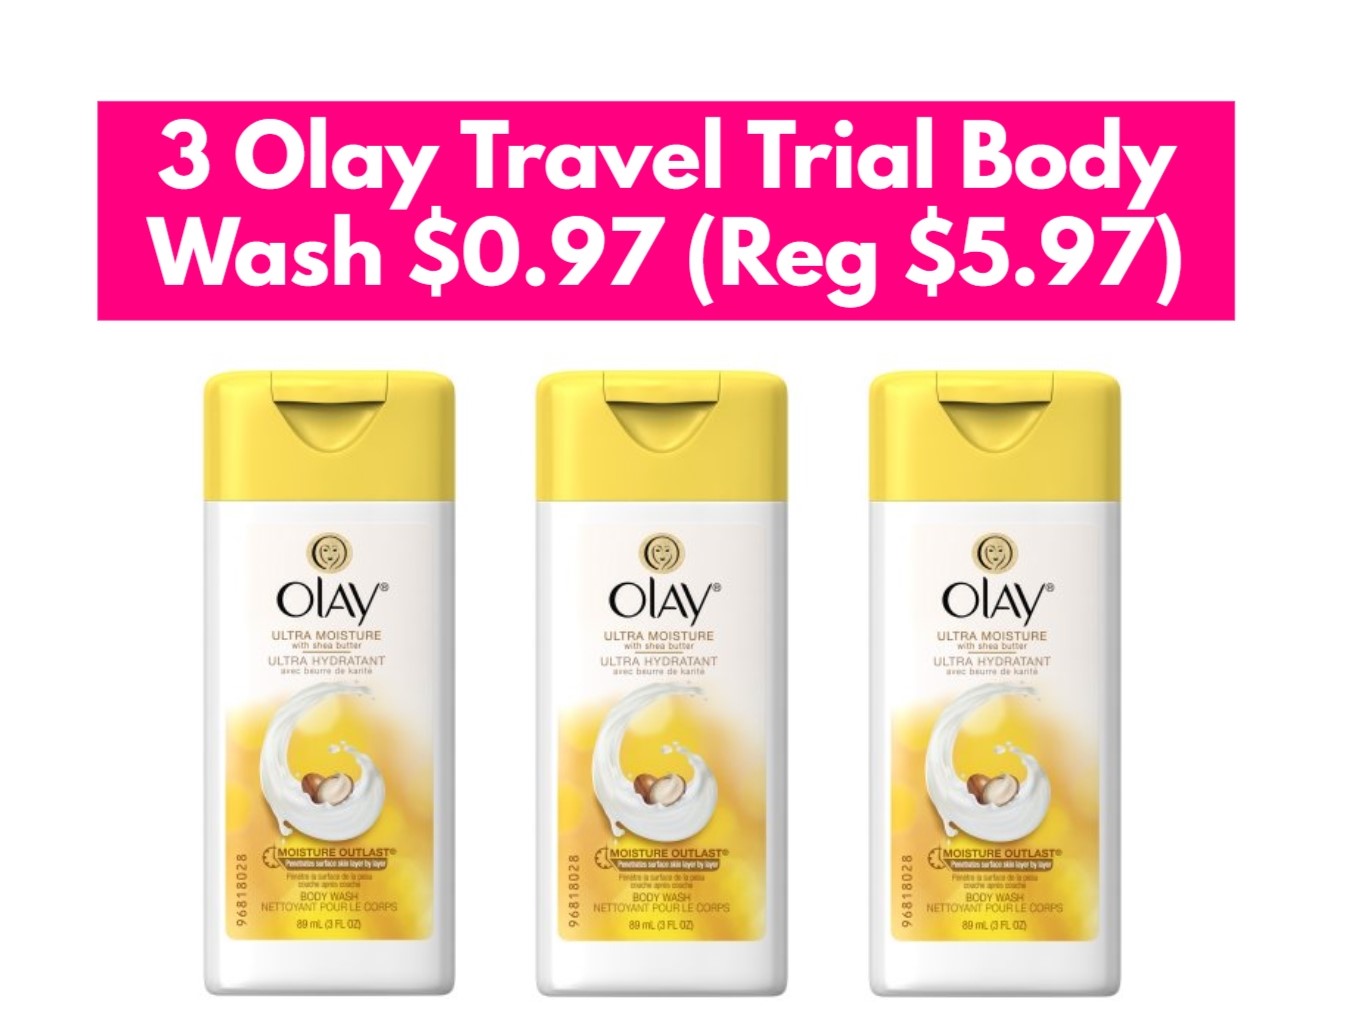 3 Olay Travel Trial Body Wash $0.97